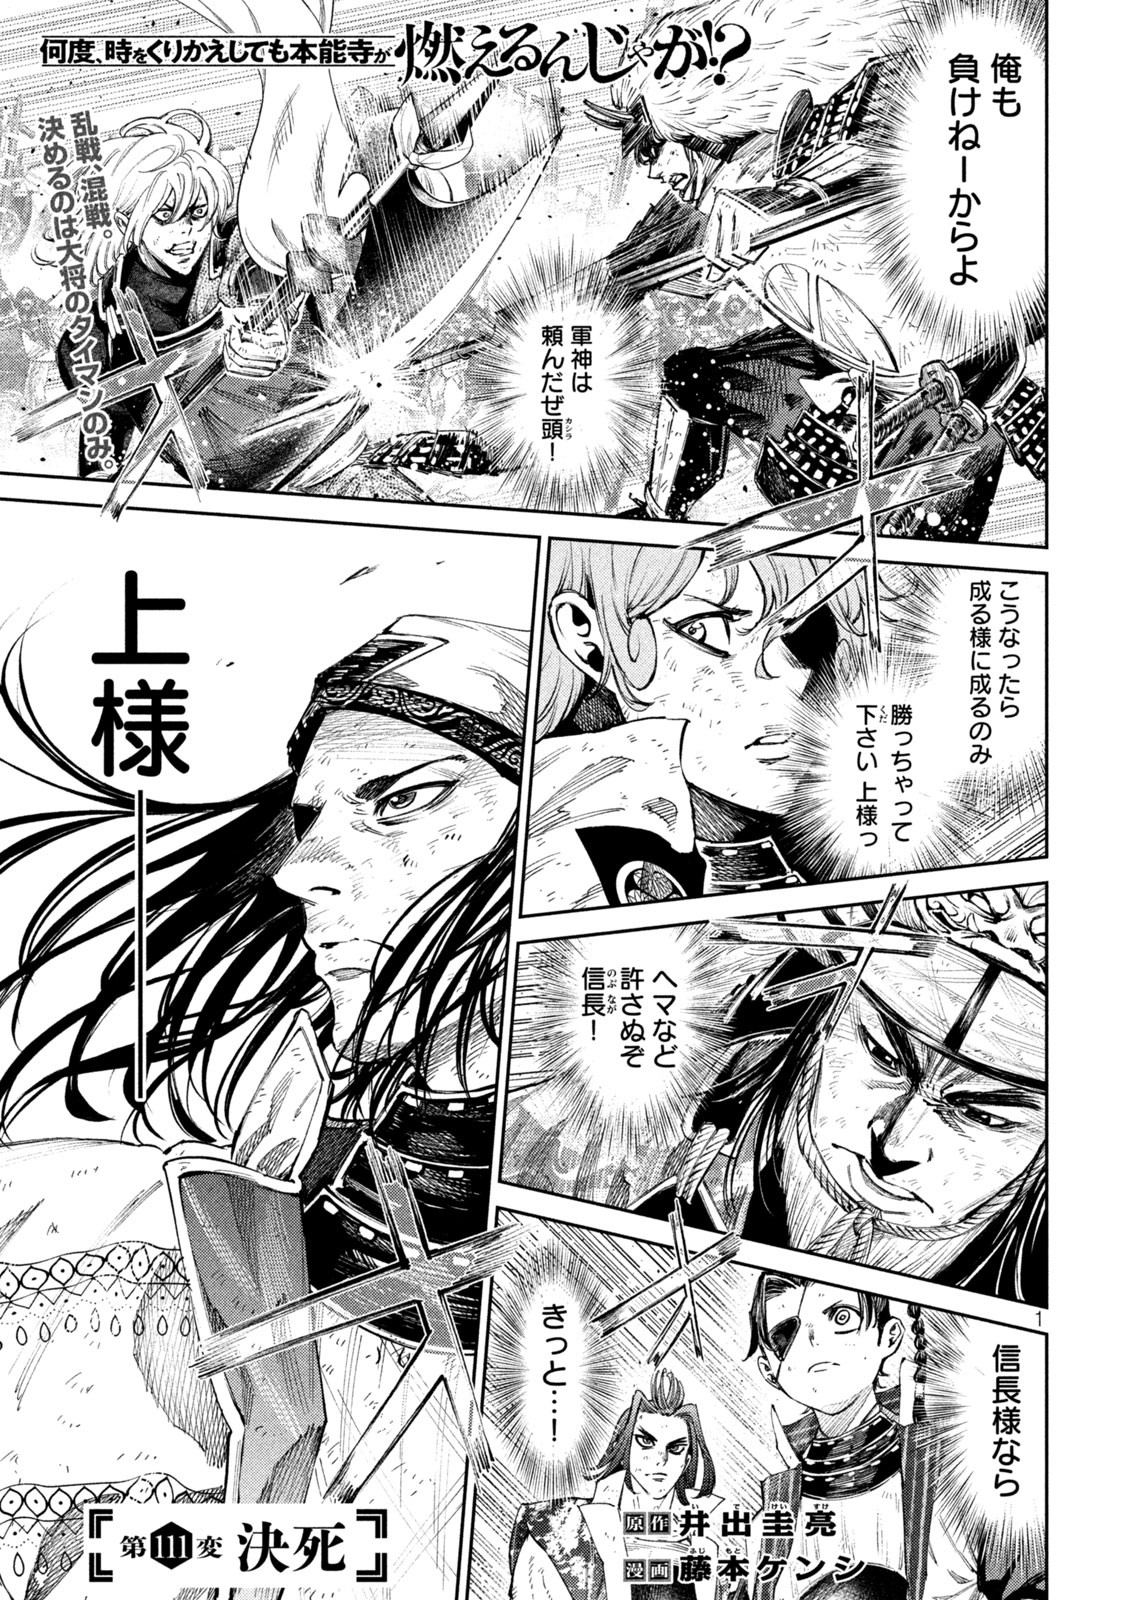 Nando toki o kurikaeshitemo Honnouji ga moerunjaga! - Chapter 111 - Page 1